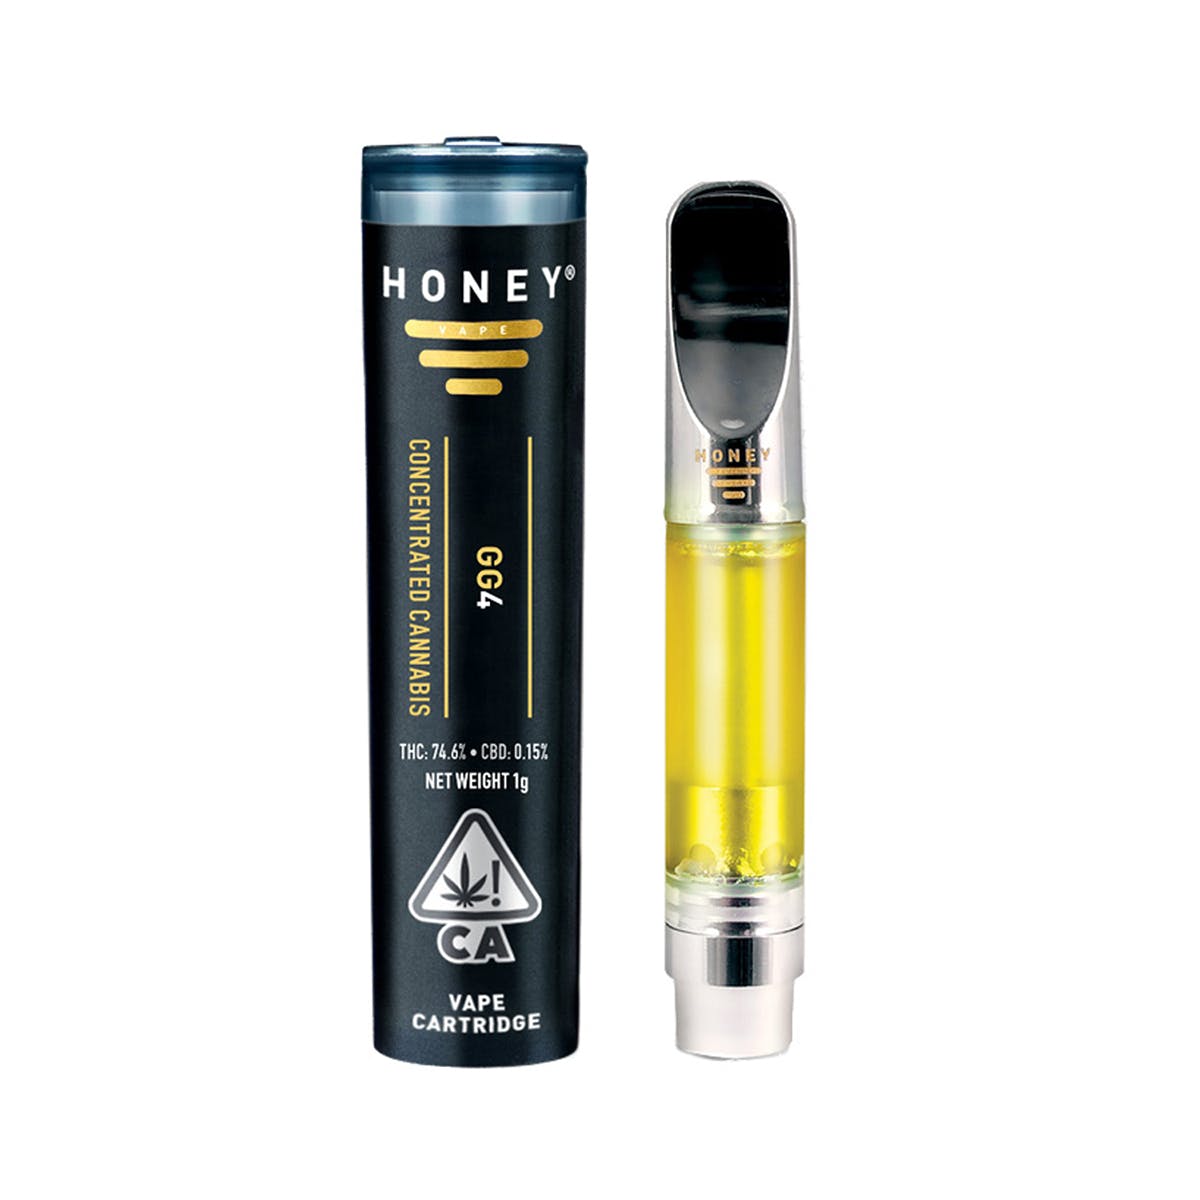 Honey® Premium Cartridge, GG4